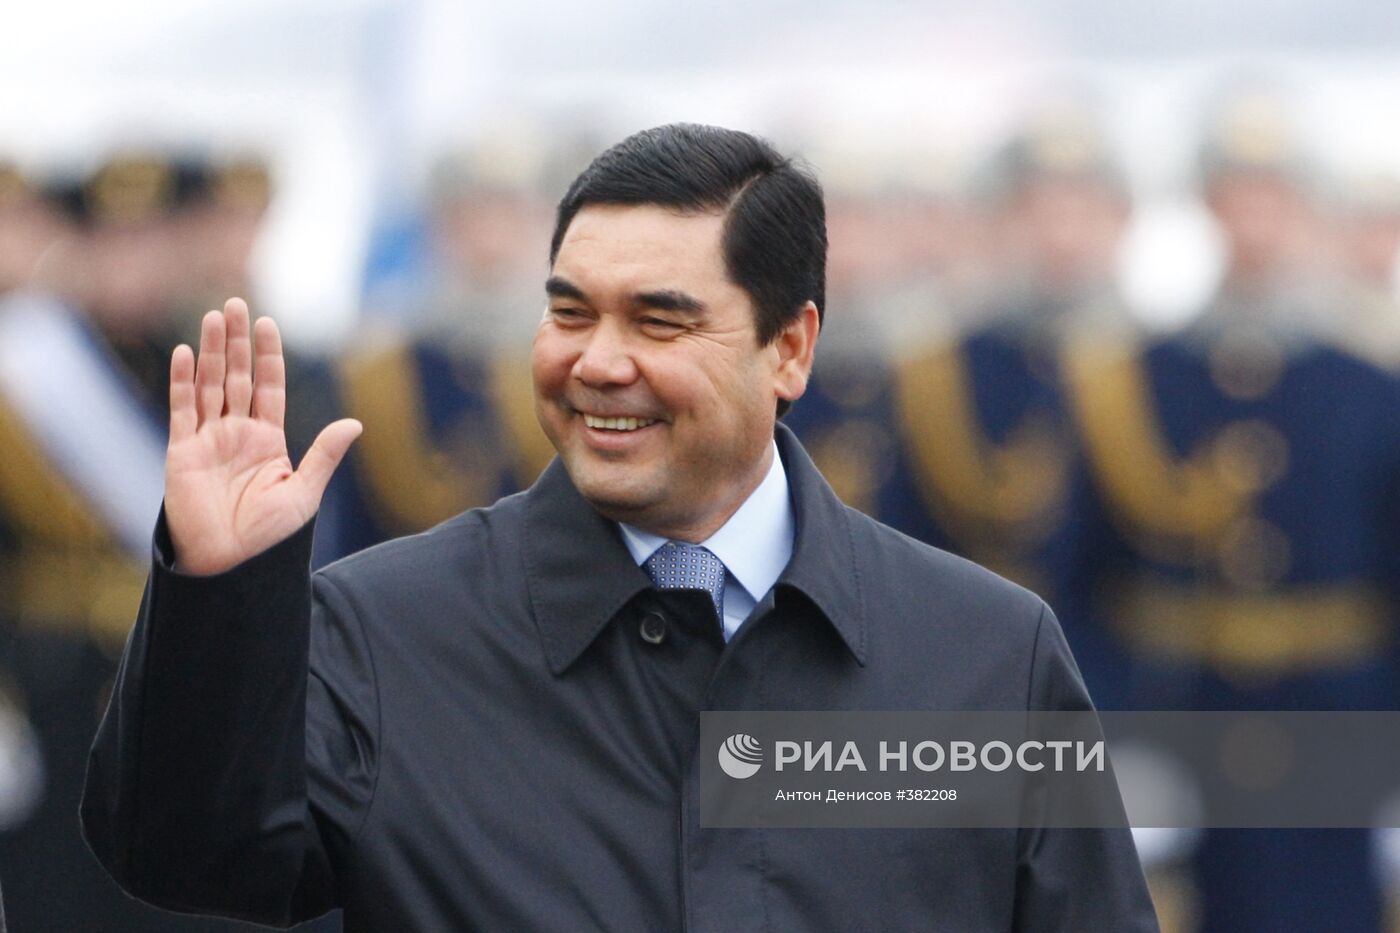 Государтвенный визит президента Туркменистана Г.Бердымухамедова